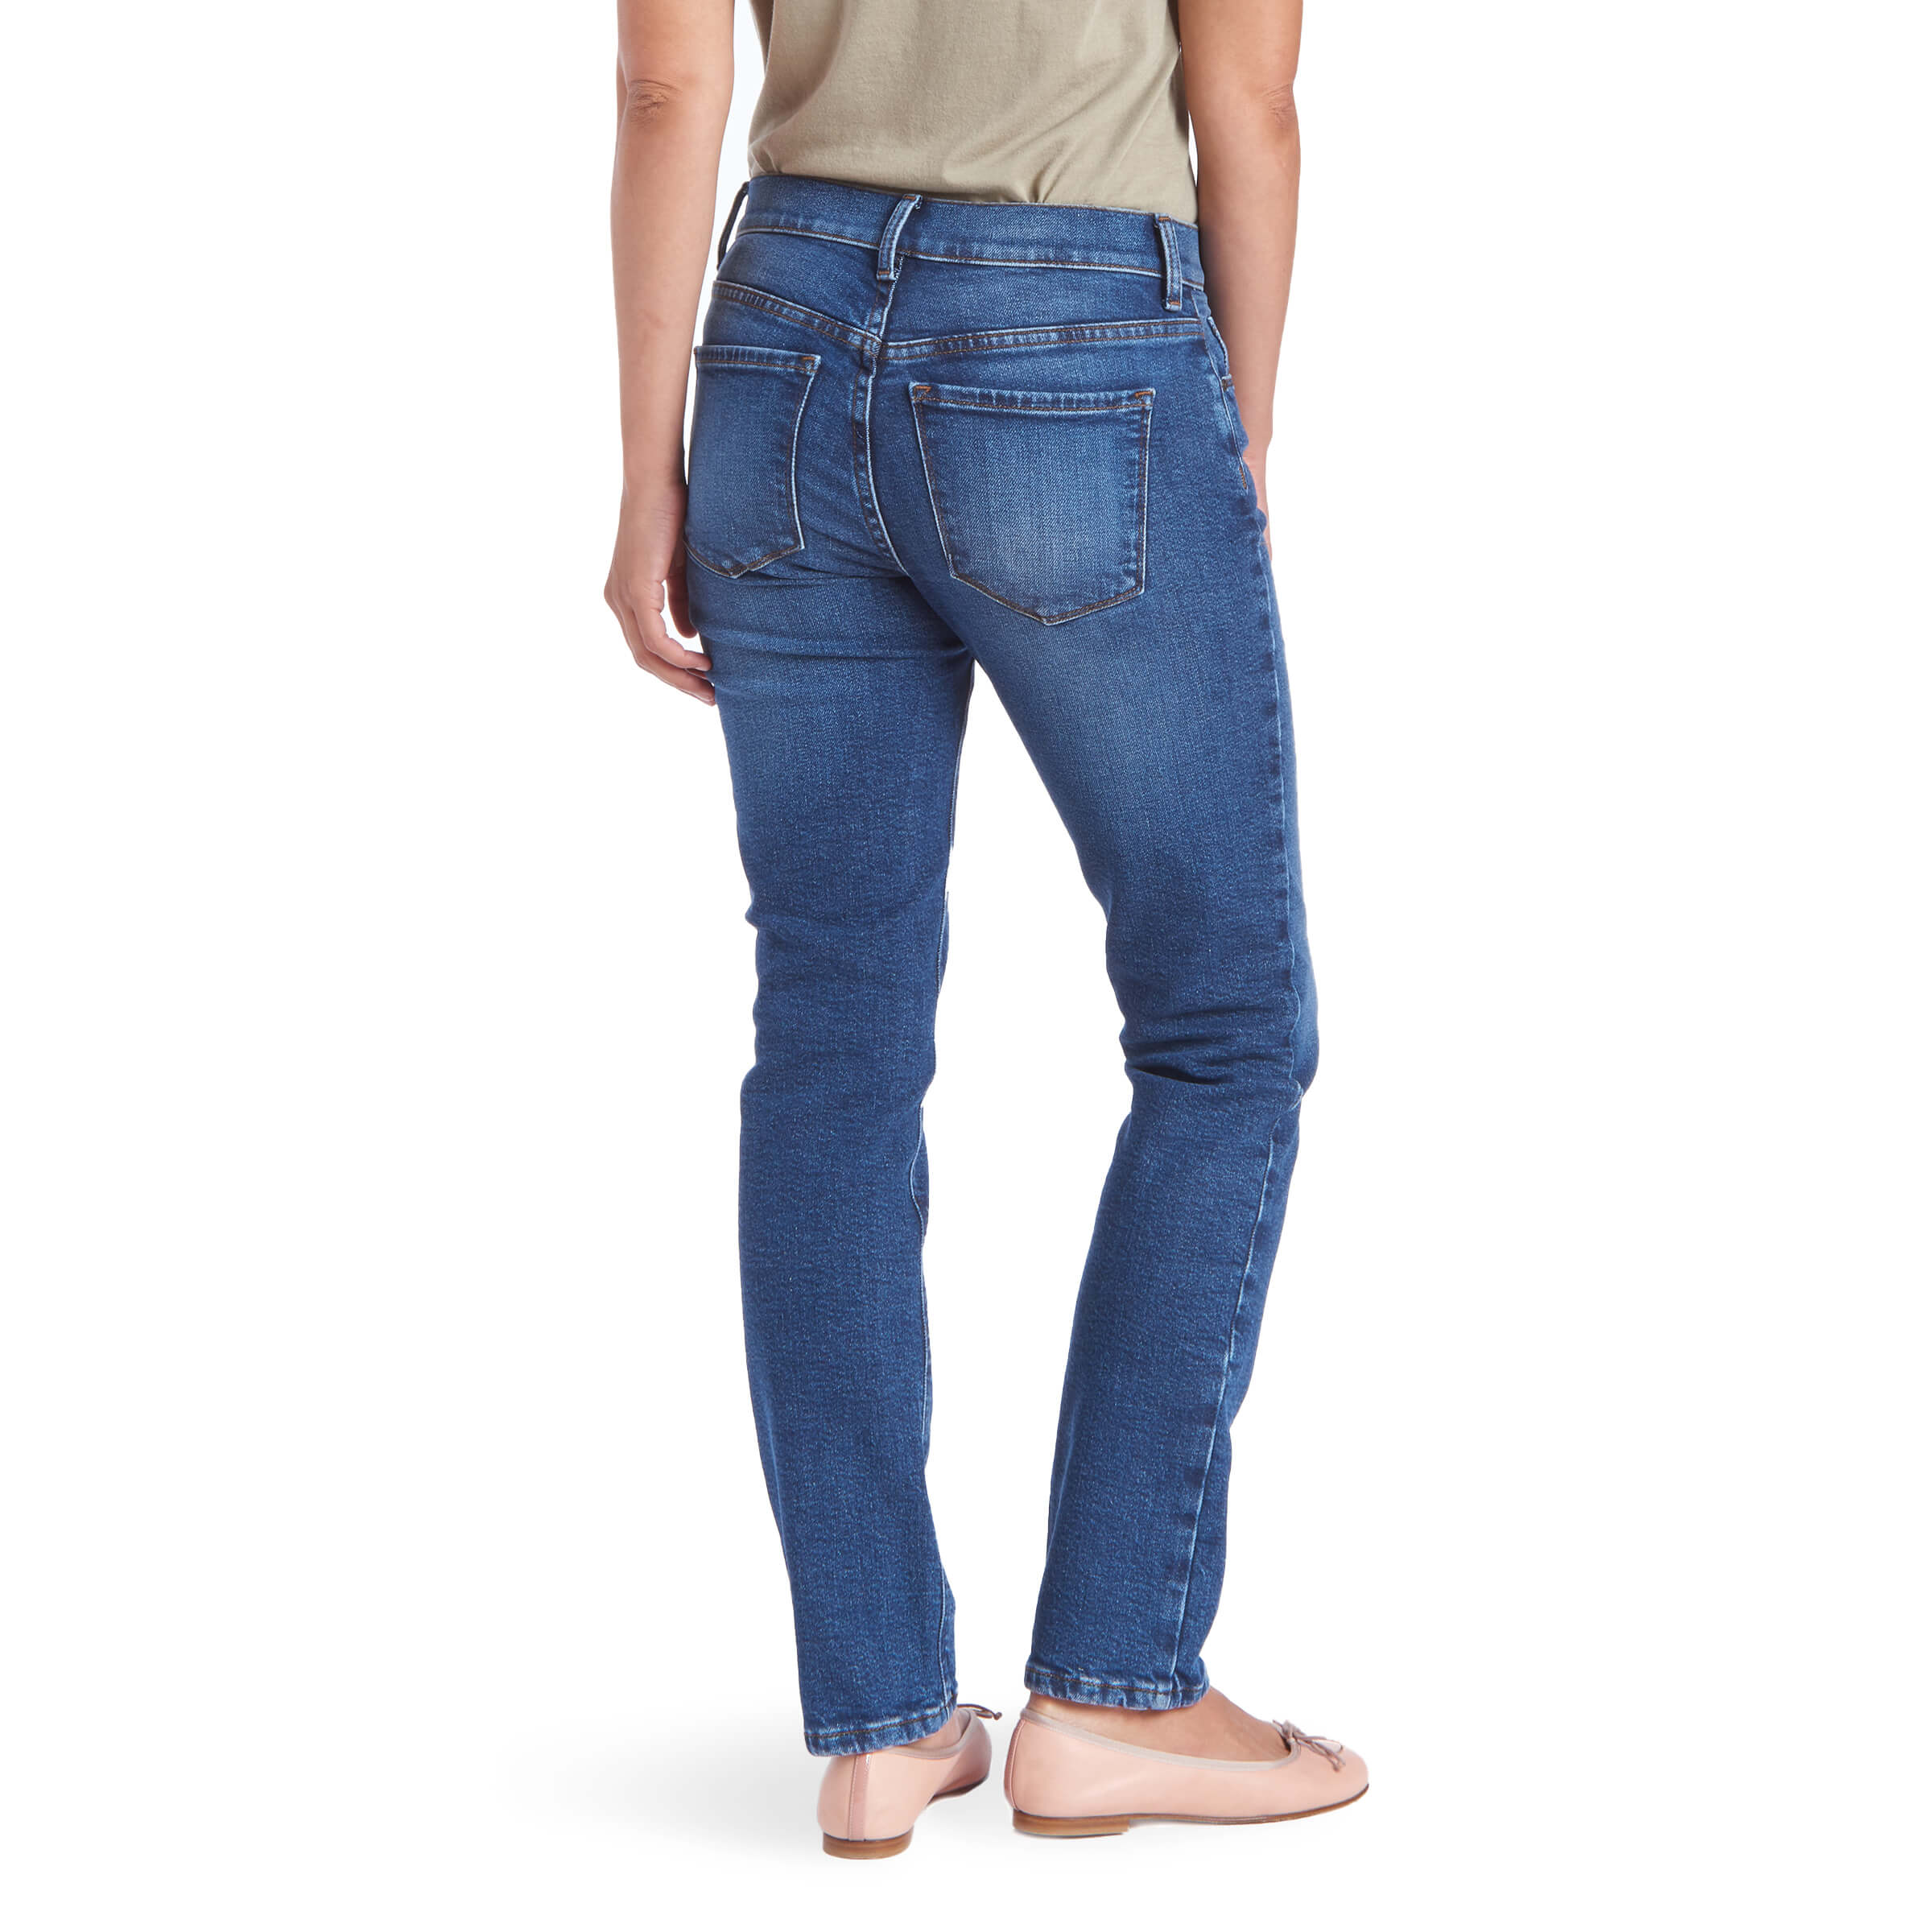 Women wearing Bleu Médium Slim Straight Grand Jeans